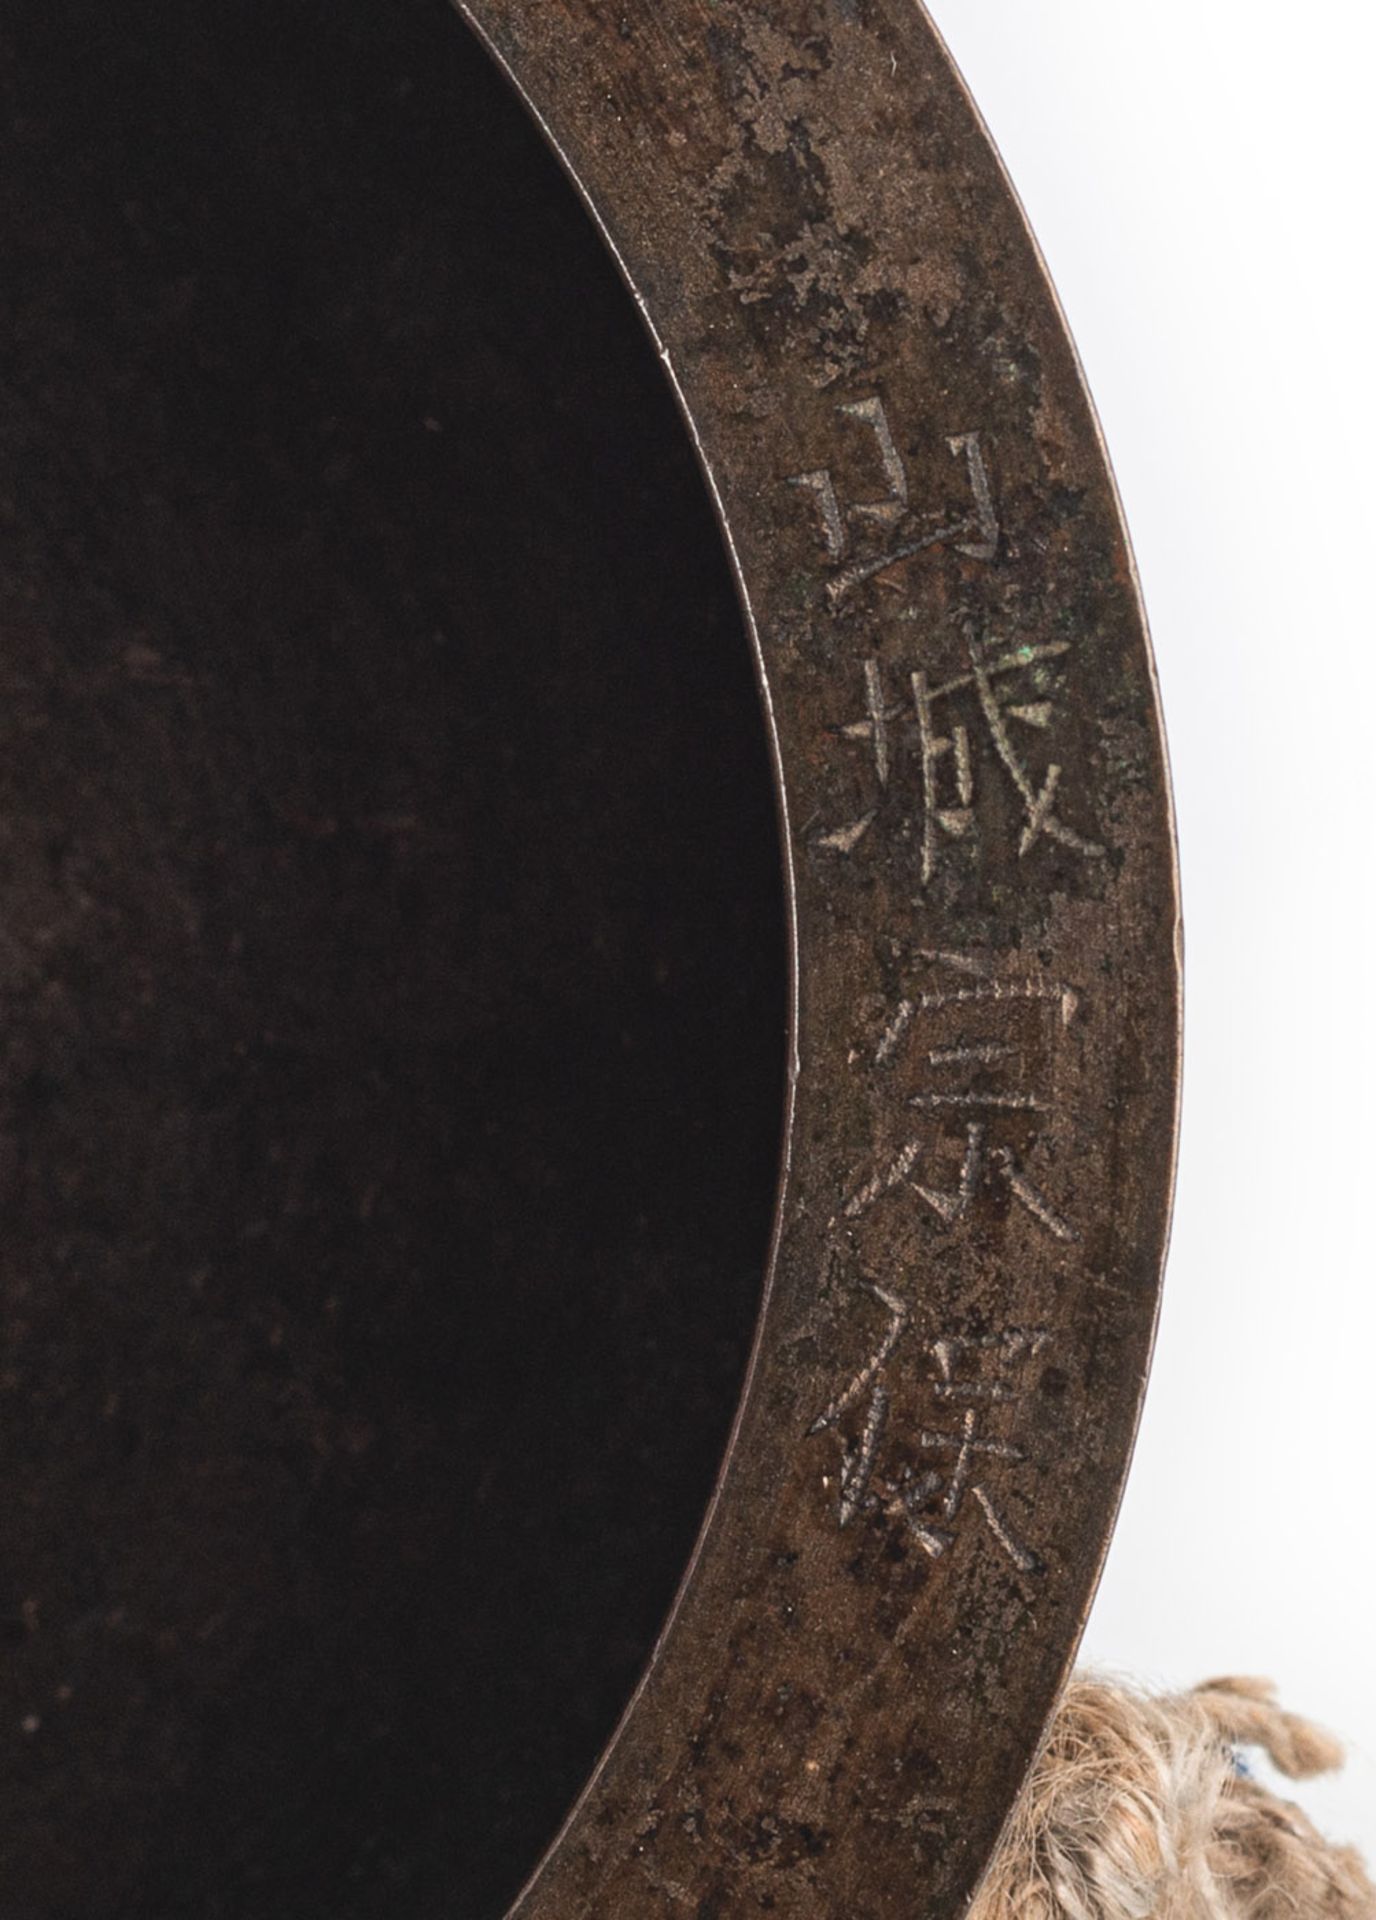 Gong aus Bronze 'Shogo' - Bild 2 aus 2